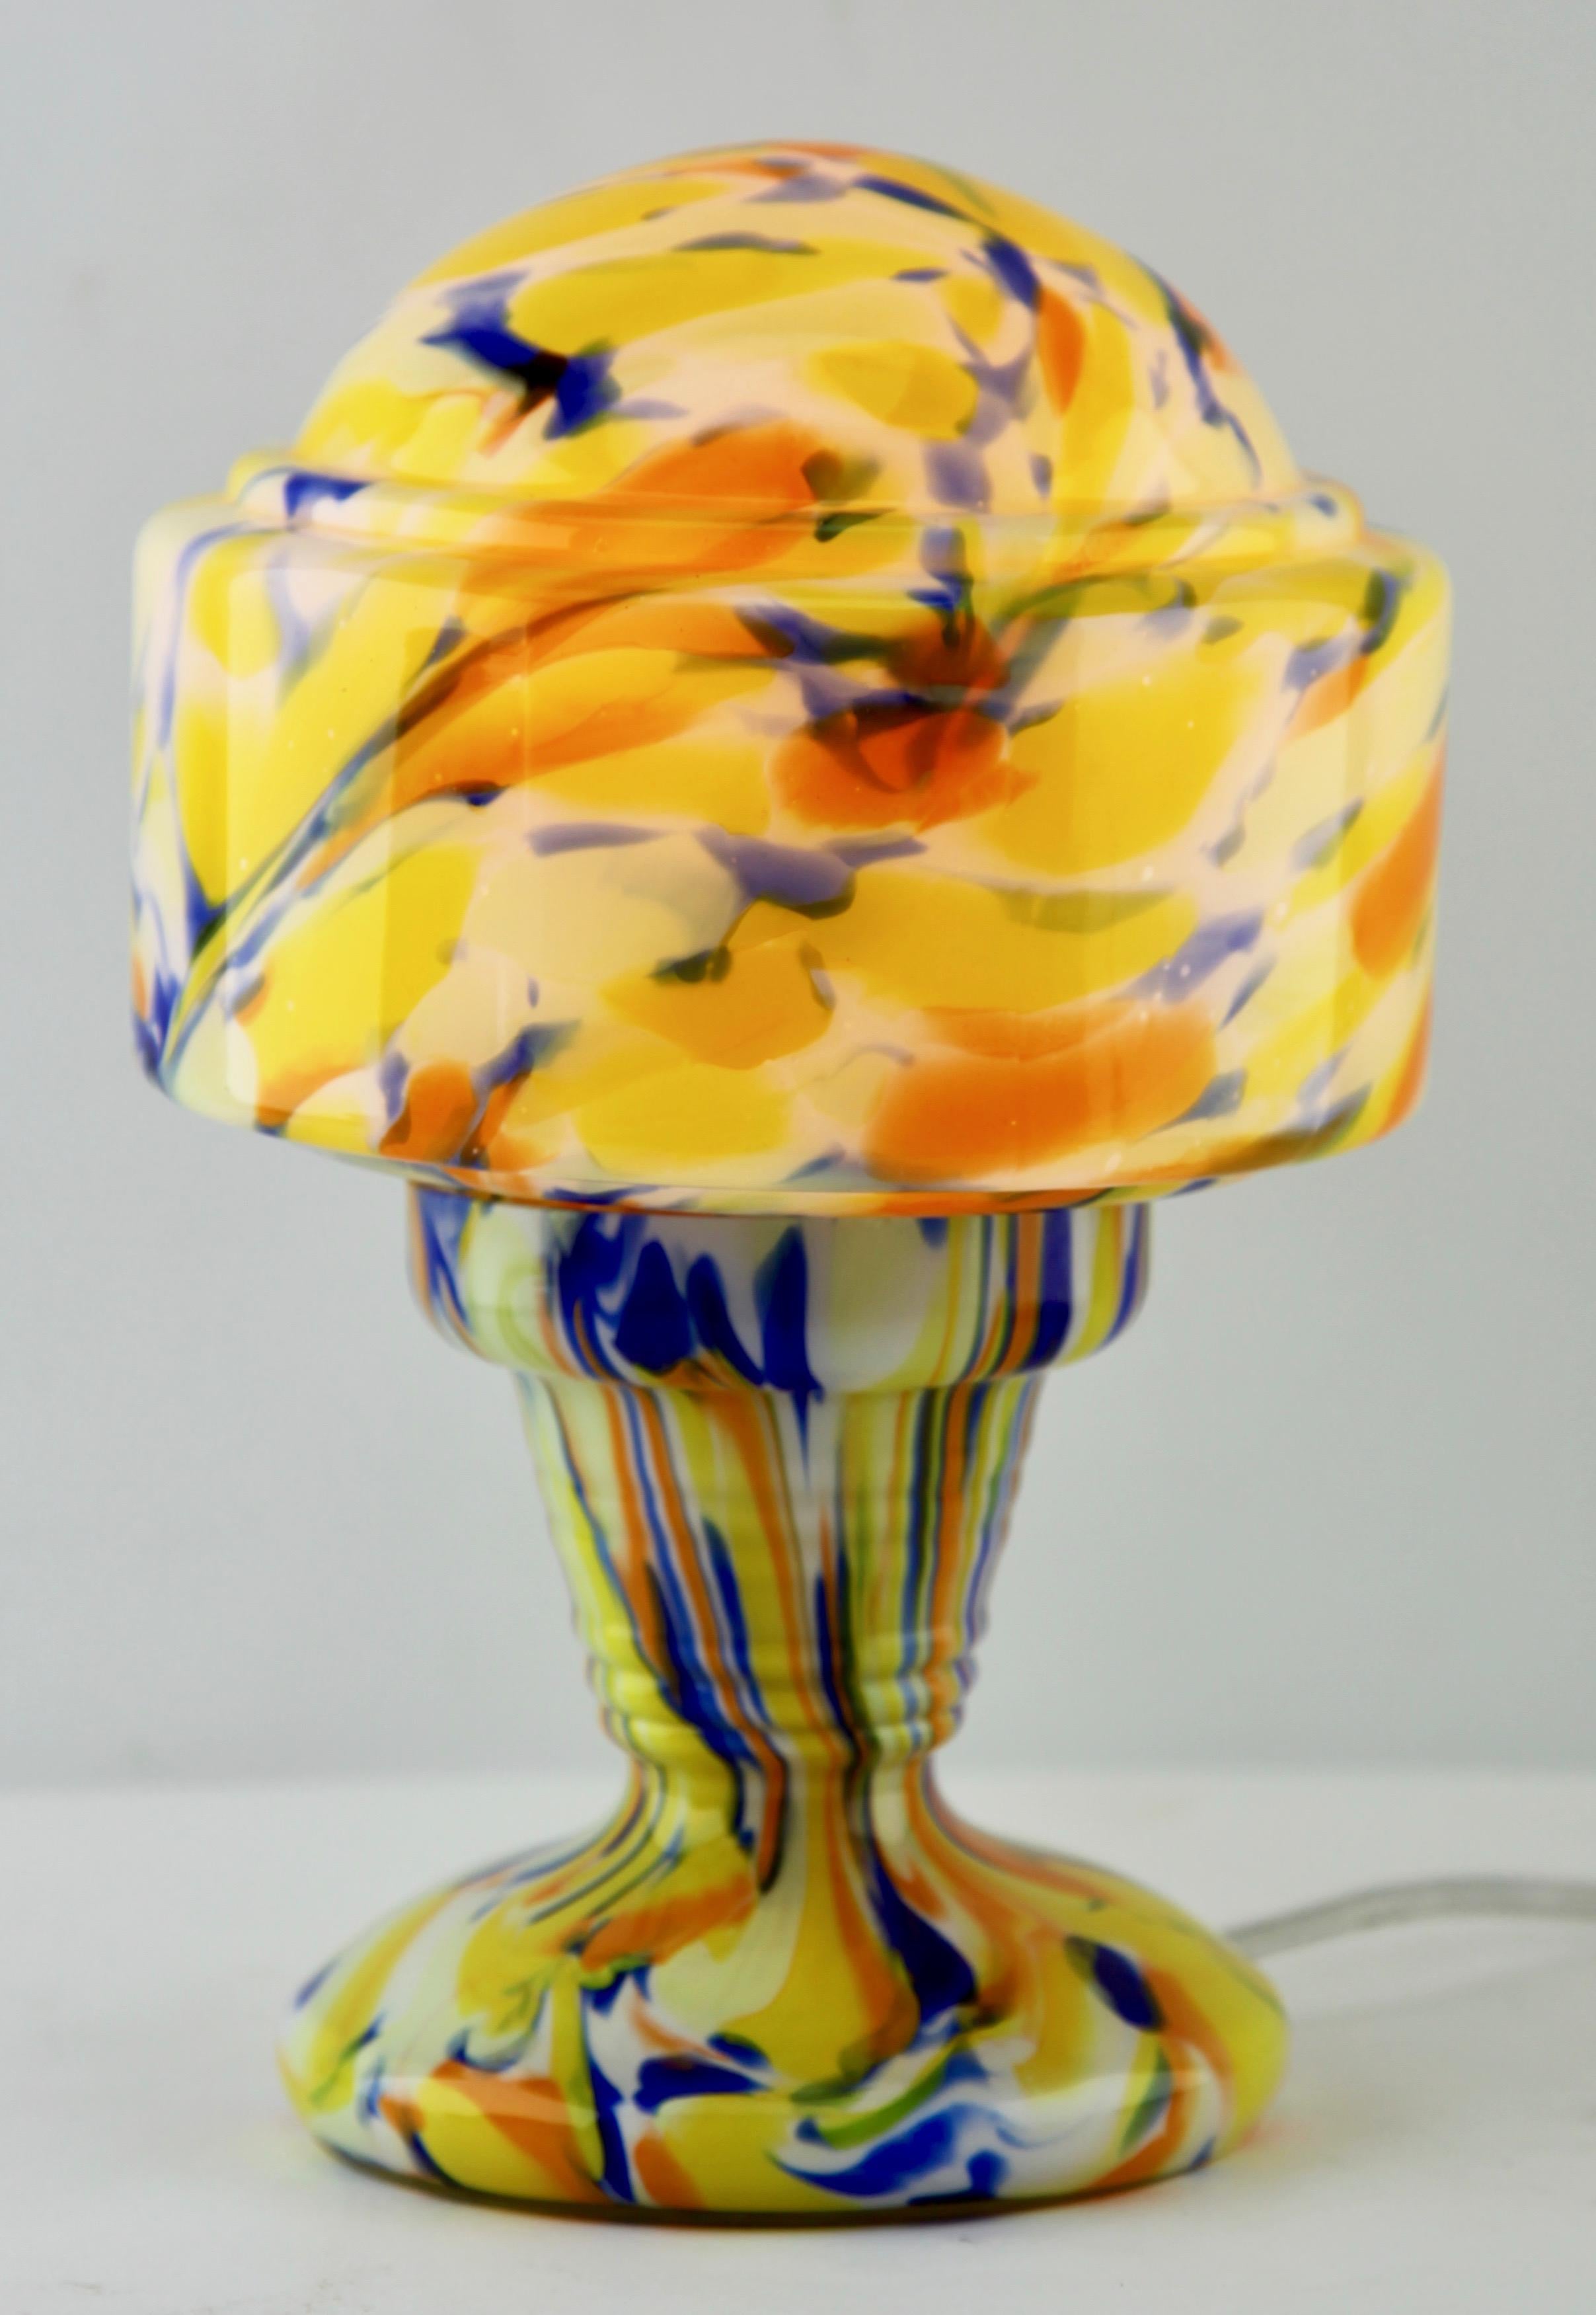 Aufsehen erregende Tischlampe aus mundgeblasenem Spritzerglas mit bunten Farben, Lampe im Art Deco Stil.
Diese Lampe ist die Originel, die in de Book verwendet wird Siehe Bild

Und sicher für die Verwendung in der Welt.u2028u2028
Originel-Fassung